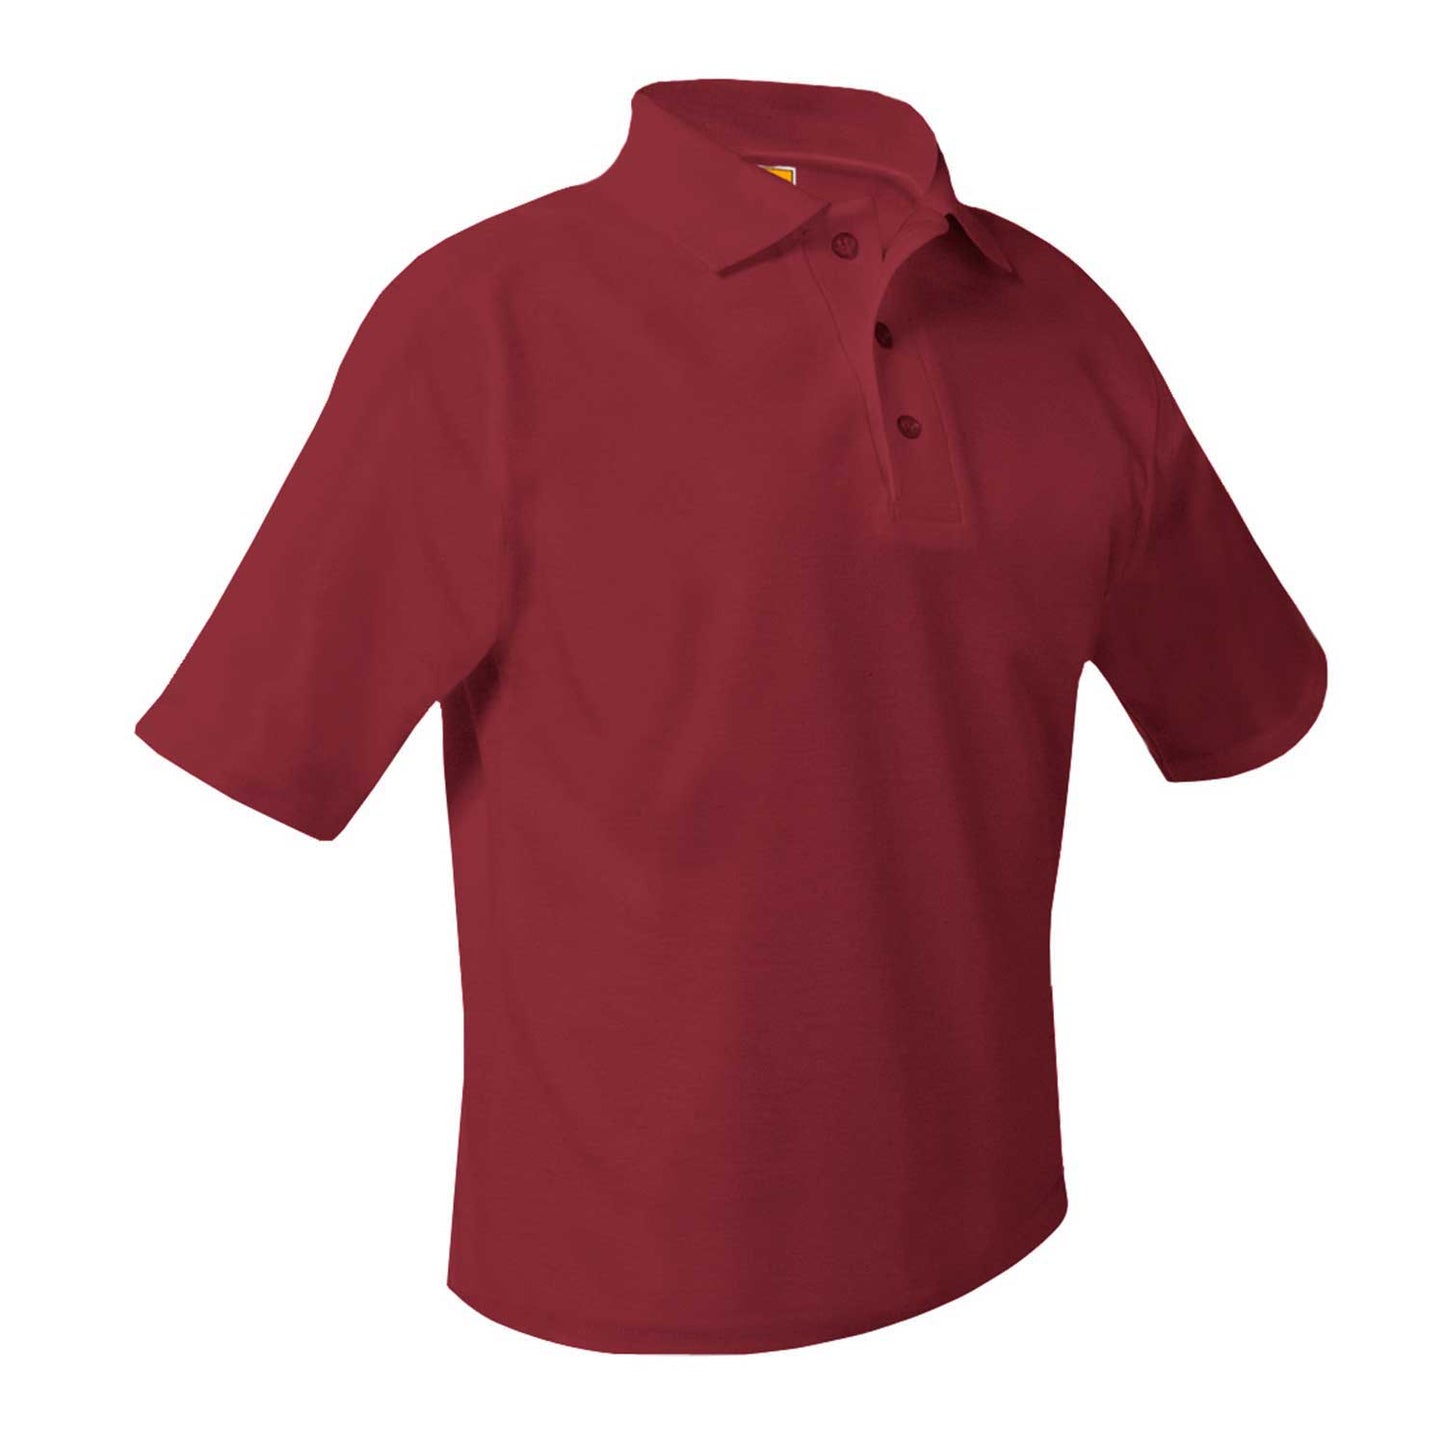 Men's/Unisex Pique Polo Shirt, Short Sleeves, Hemmed w/Logo - 1227